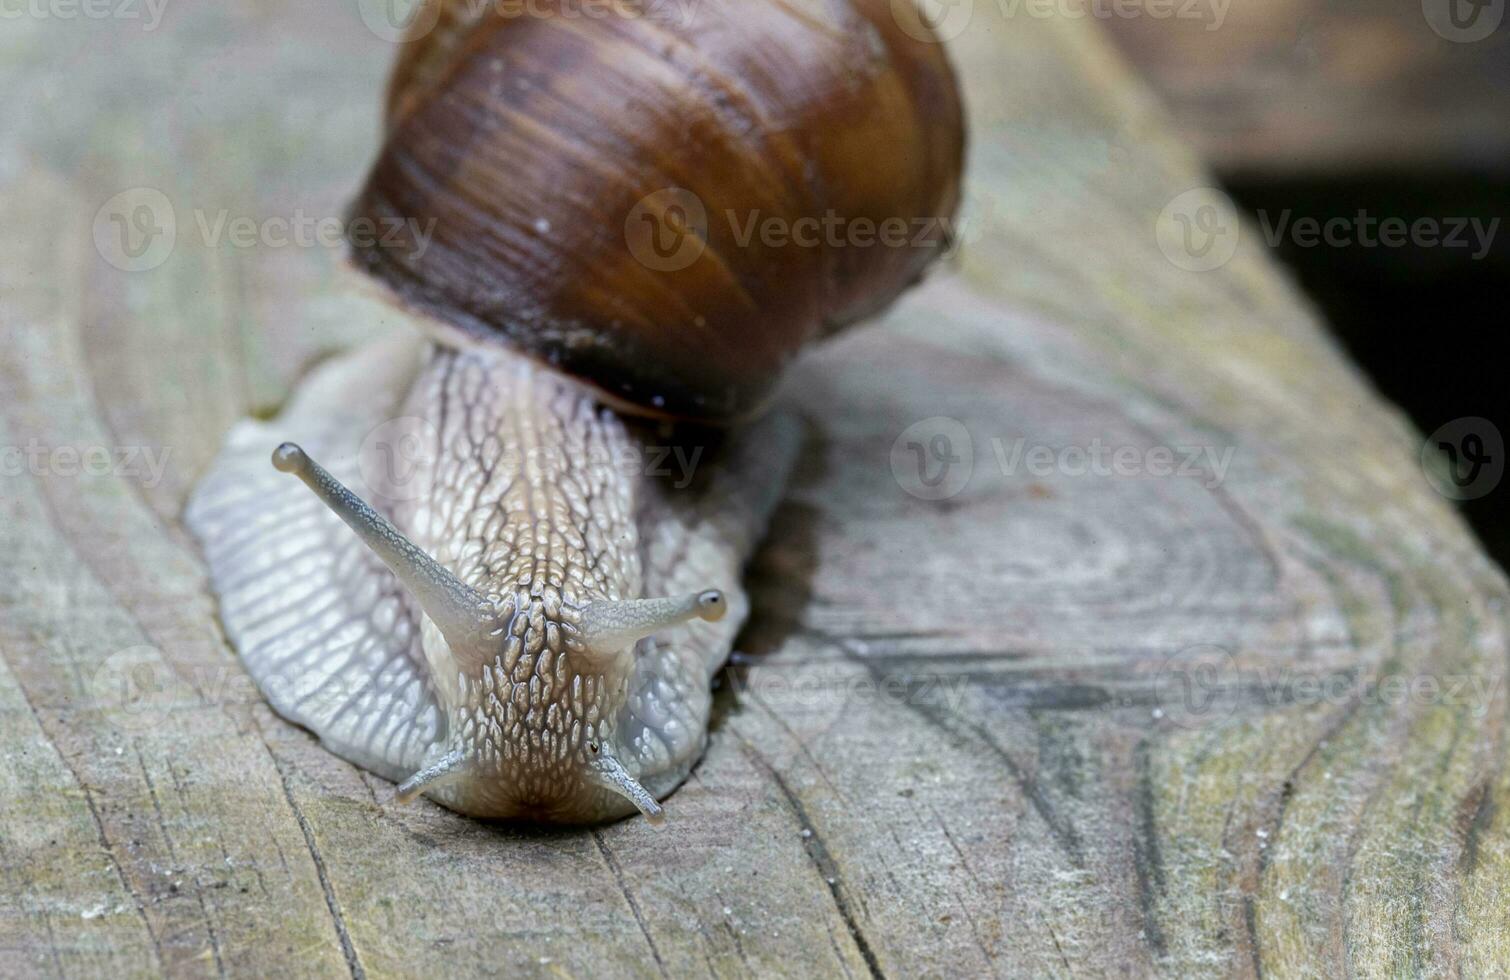 magnifique grain de raisin escargot fermer sur une en bois Contexte. photo